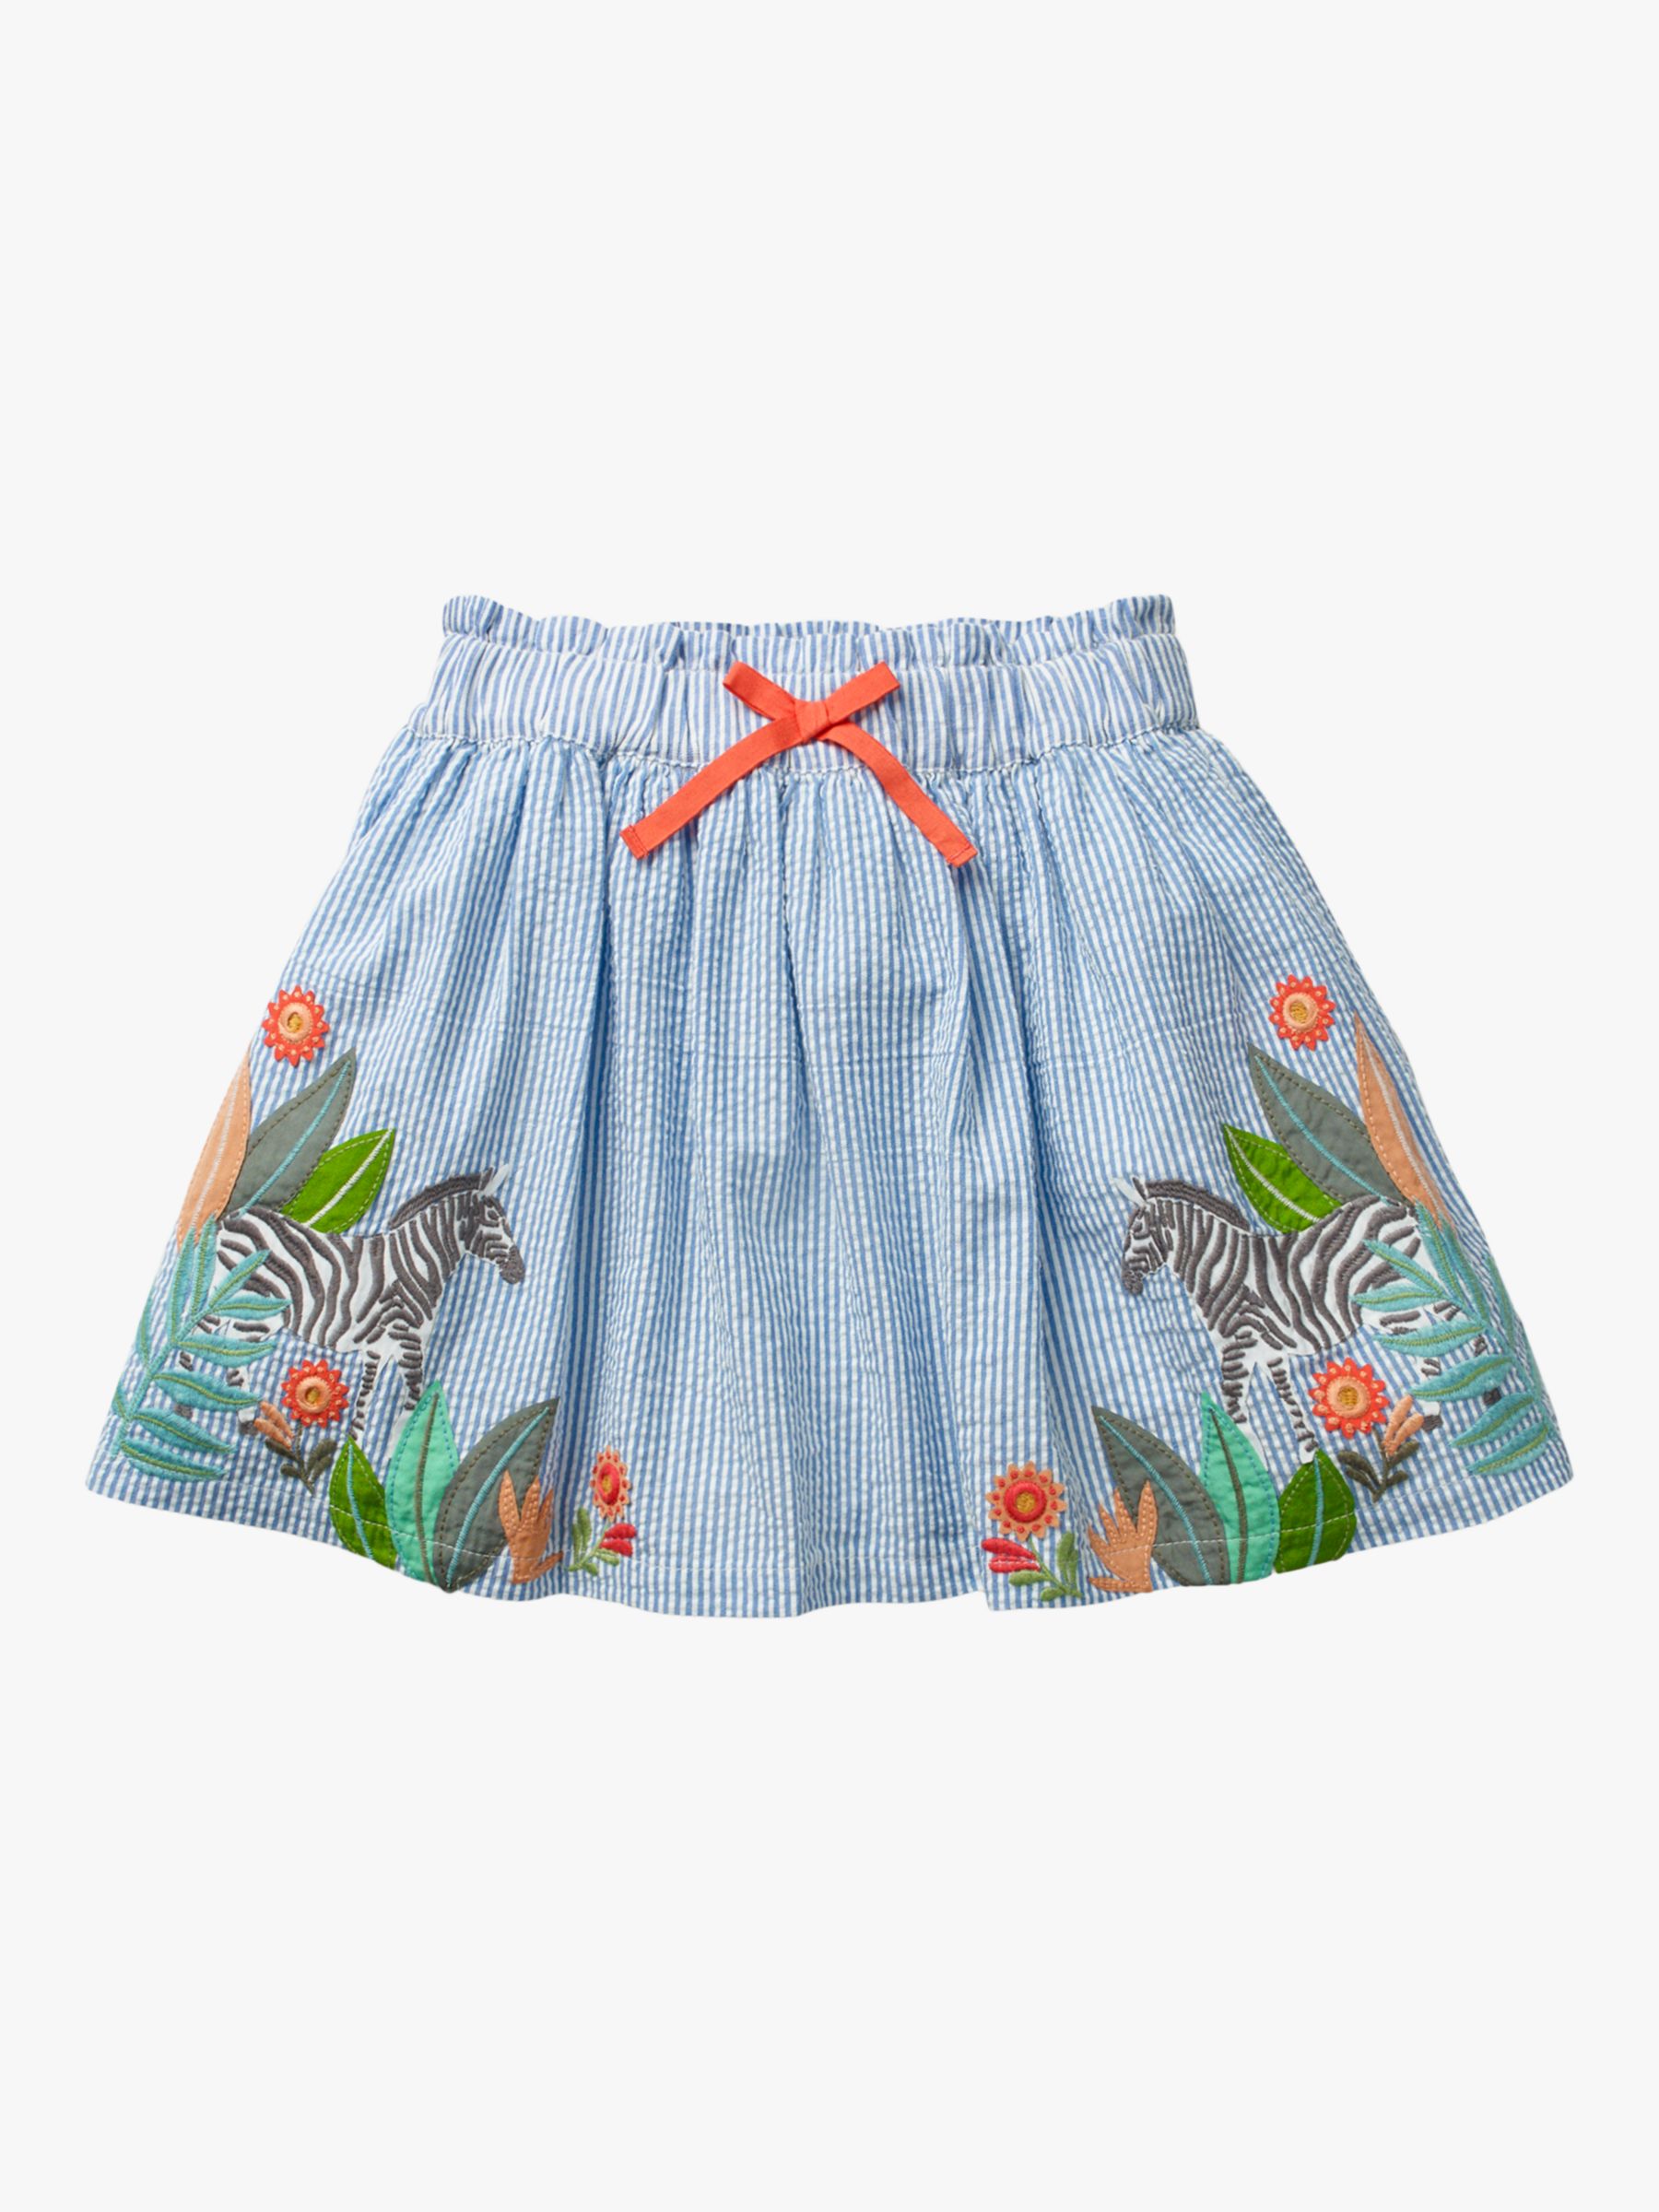 Mini Boden Girls' Stripe Jungle Novelty Woven Skirt, Seascape Blue Zebra